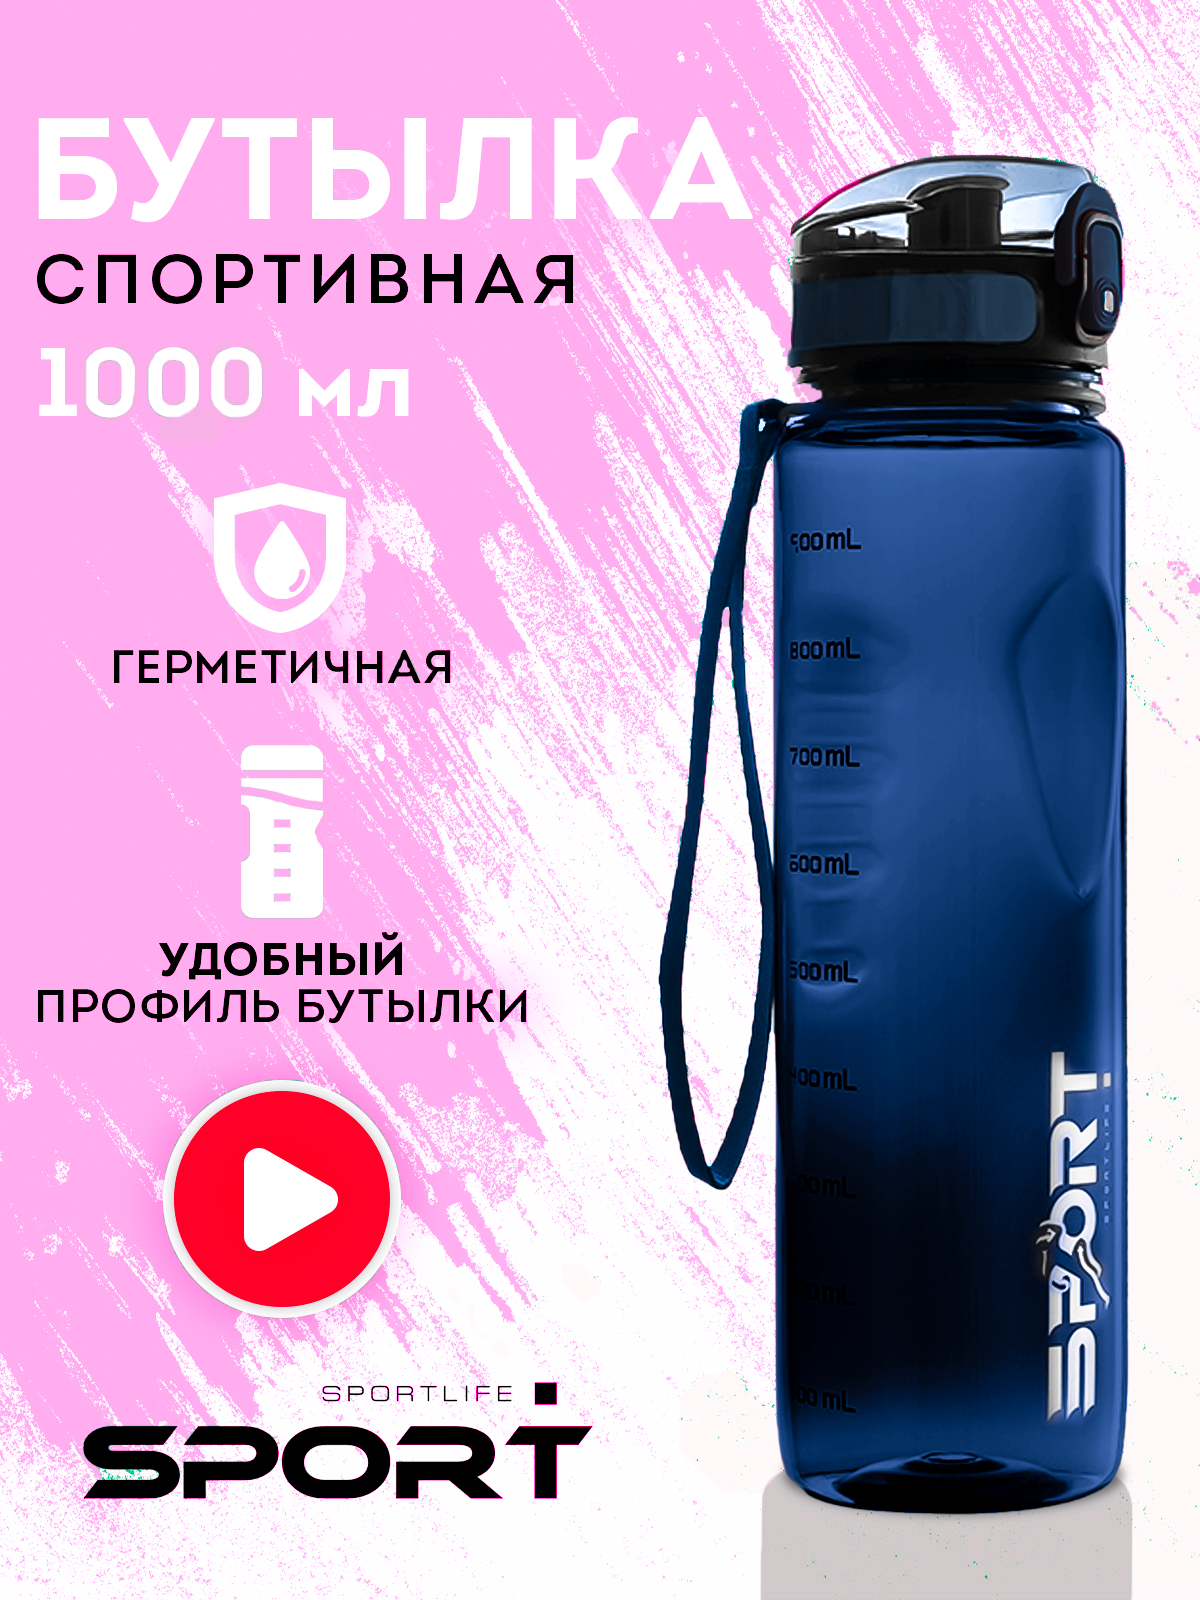 Бутылка для воды спортивная Sportlife 1л синяя, спортивная бутылка для воды, бутылка для воды, бутылка с поильником, фитнес бутылка